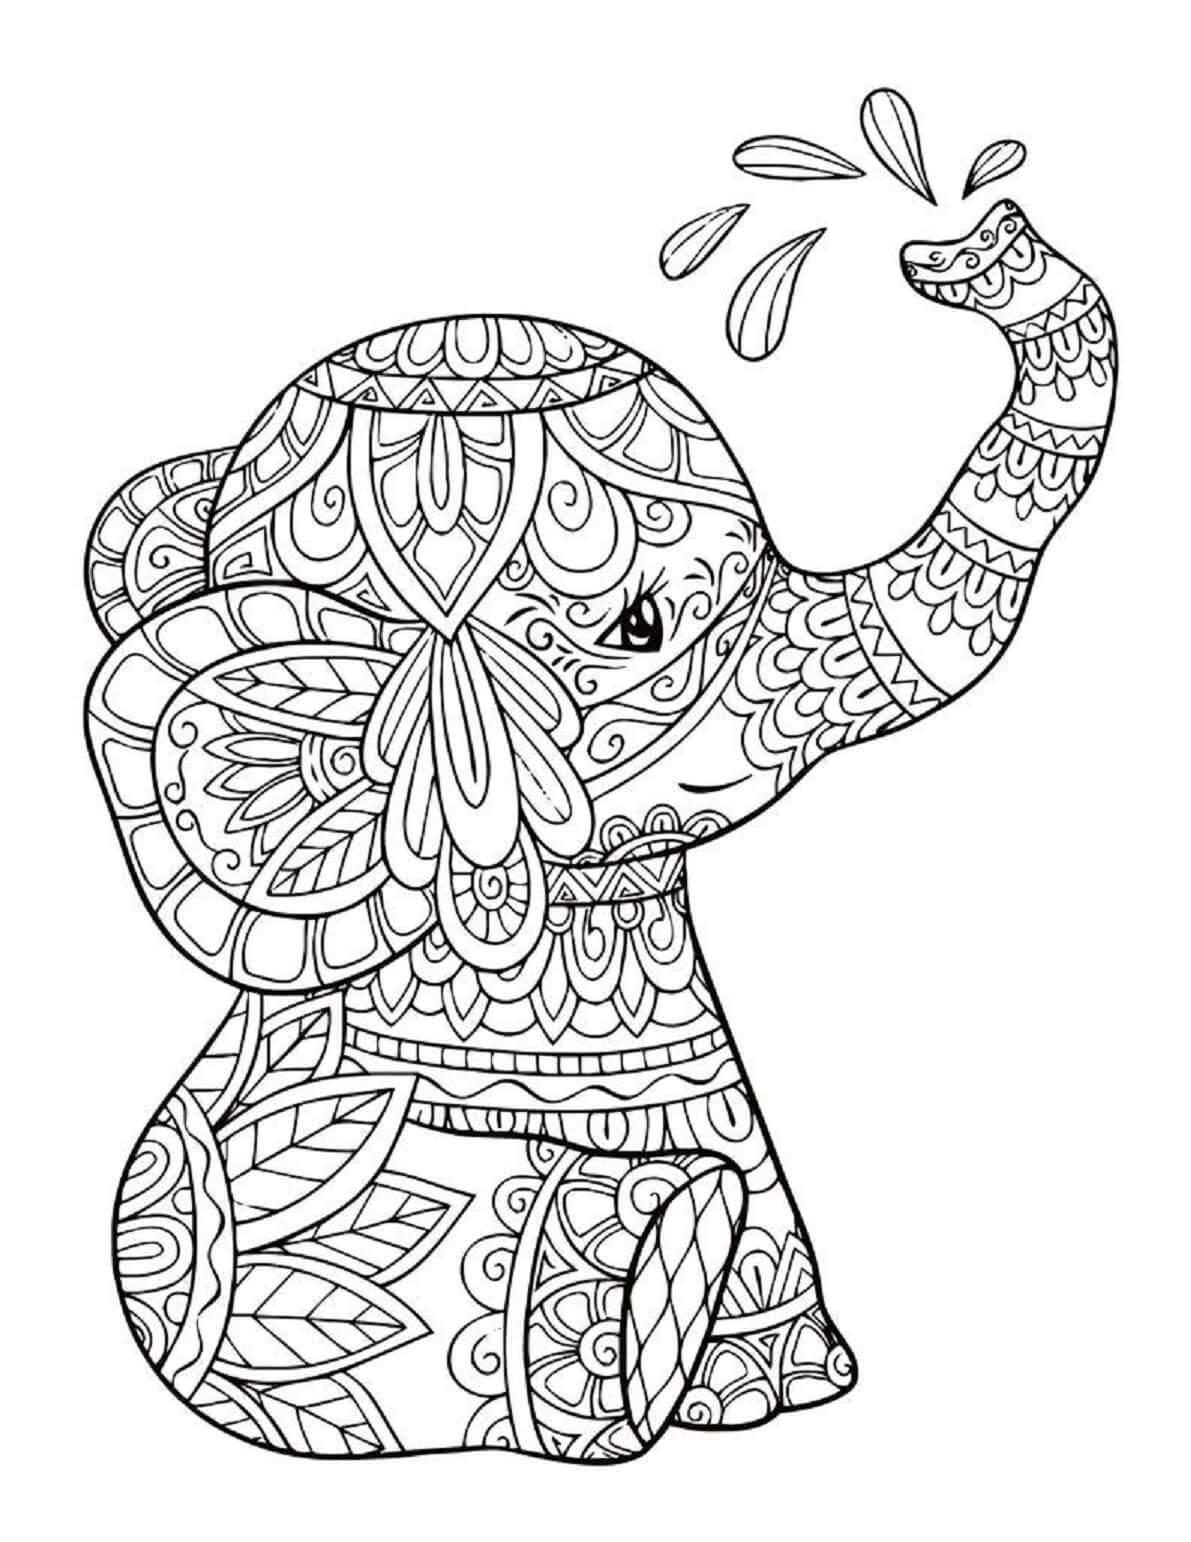 Mandala Smile Elephant Sitting Coloring Page Mandalas